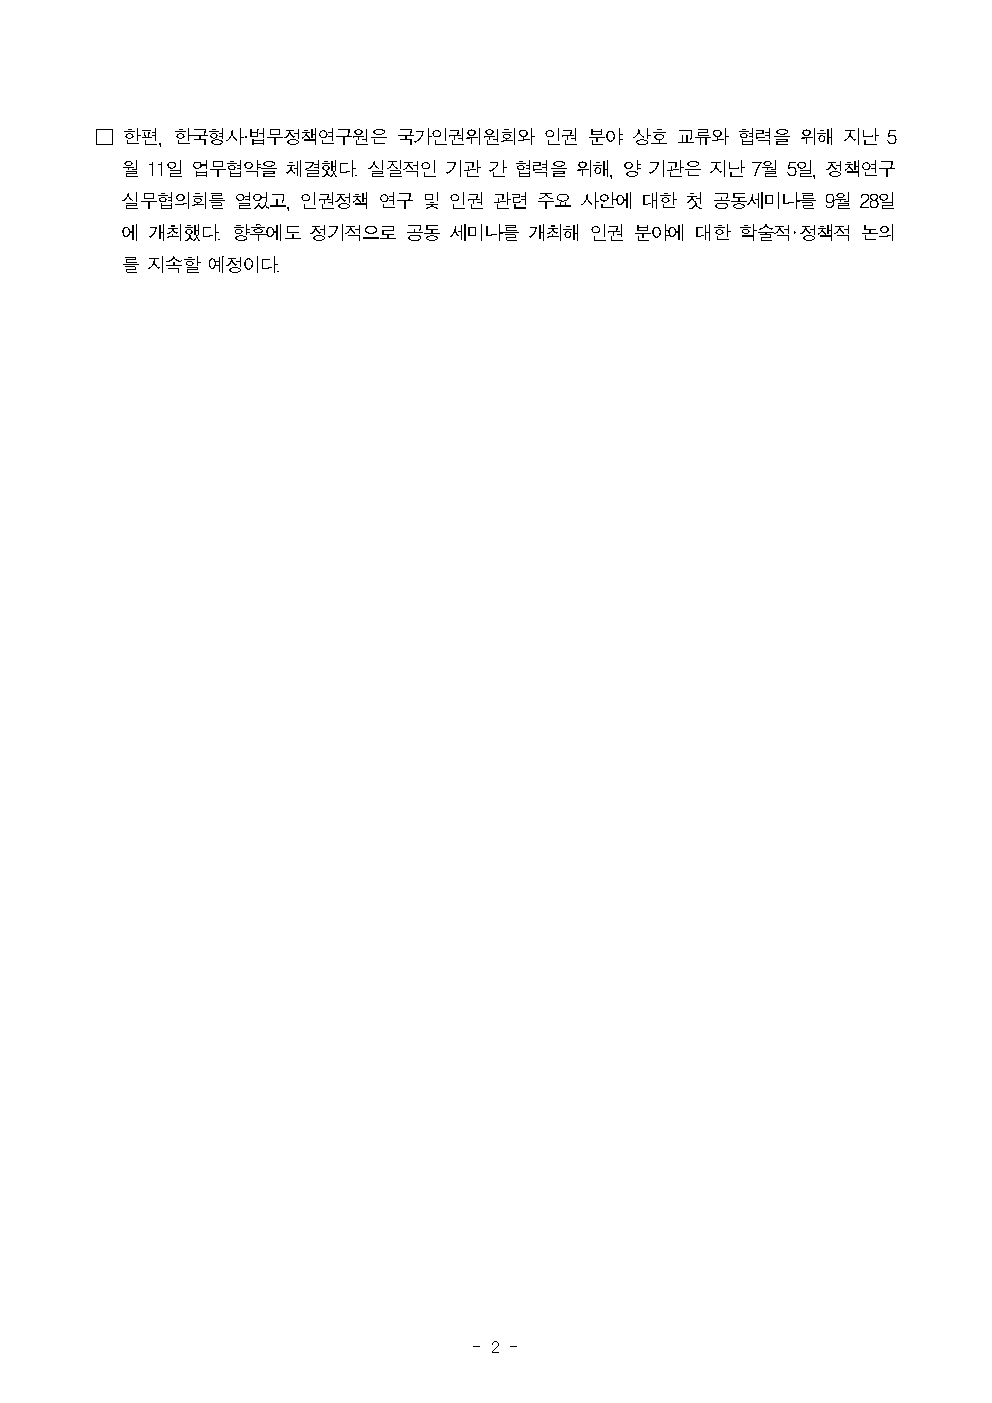 한국형사·법무정책연구원, 국가인권위원회와 공동세미나 개최 자세한 내용은 하단 pdf파일 참조